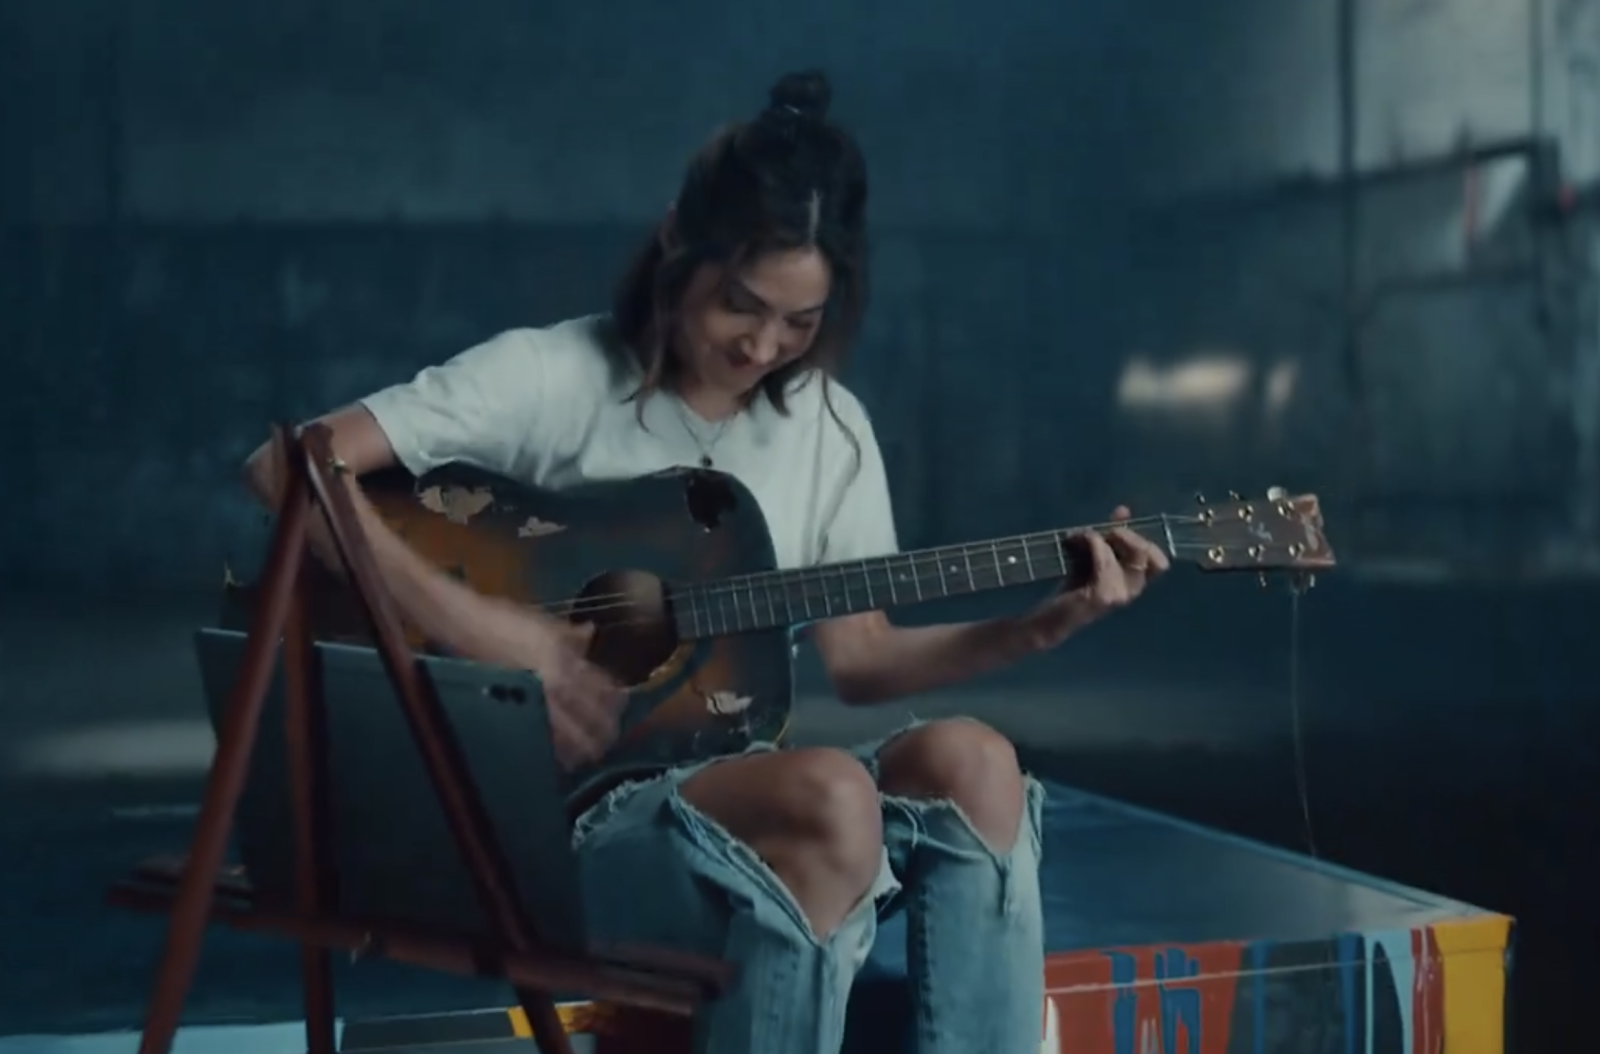 Samsung reklamı, Apple reklamının bittiği yerden başlıyor. Bir kadın, önceki reklamda parçalanan gitarı alıyor ve bu gitarı parçalayan hidrolik presin üzerinde çalıyor.